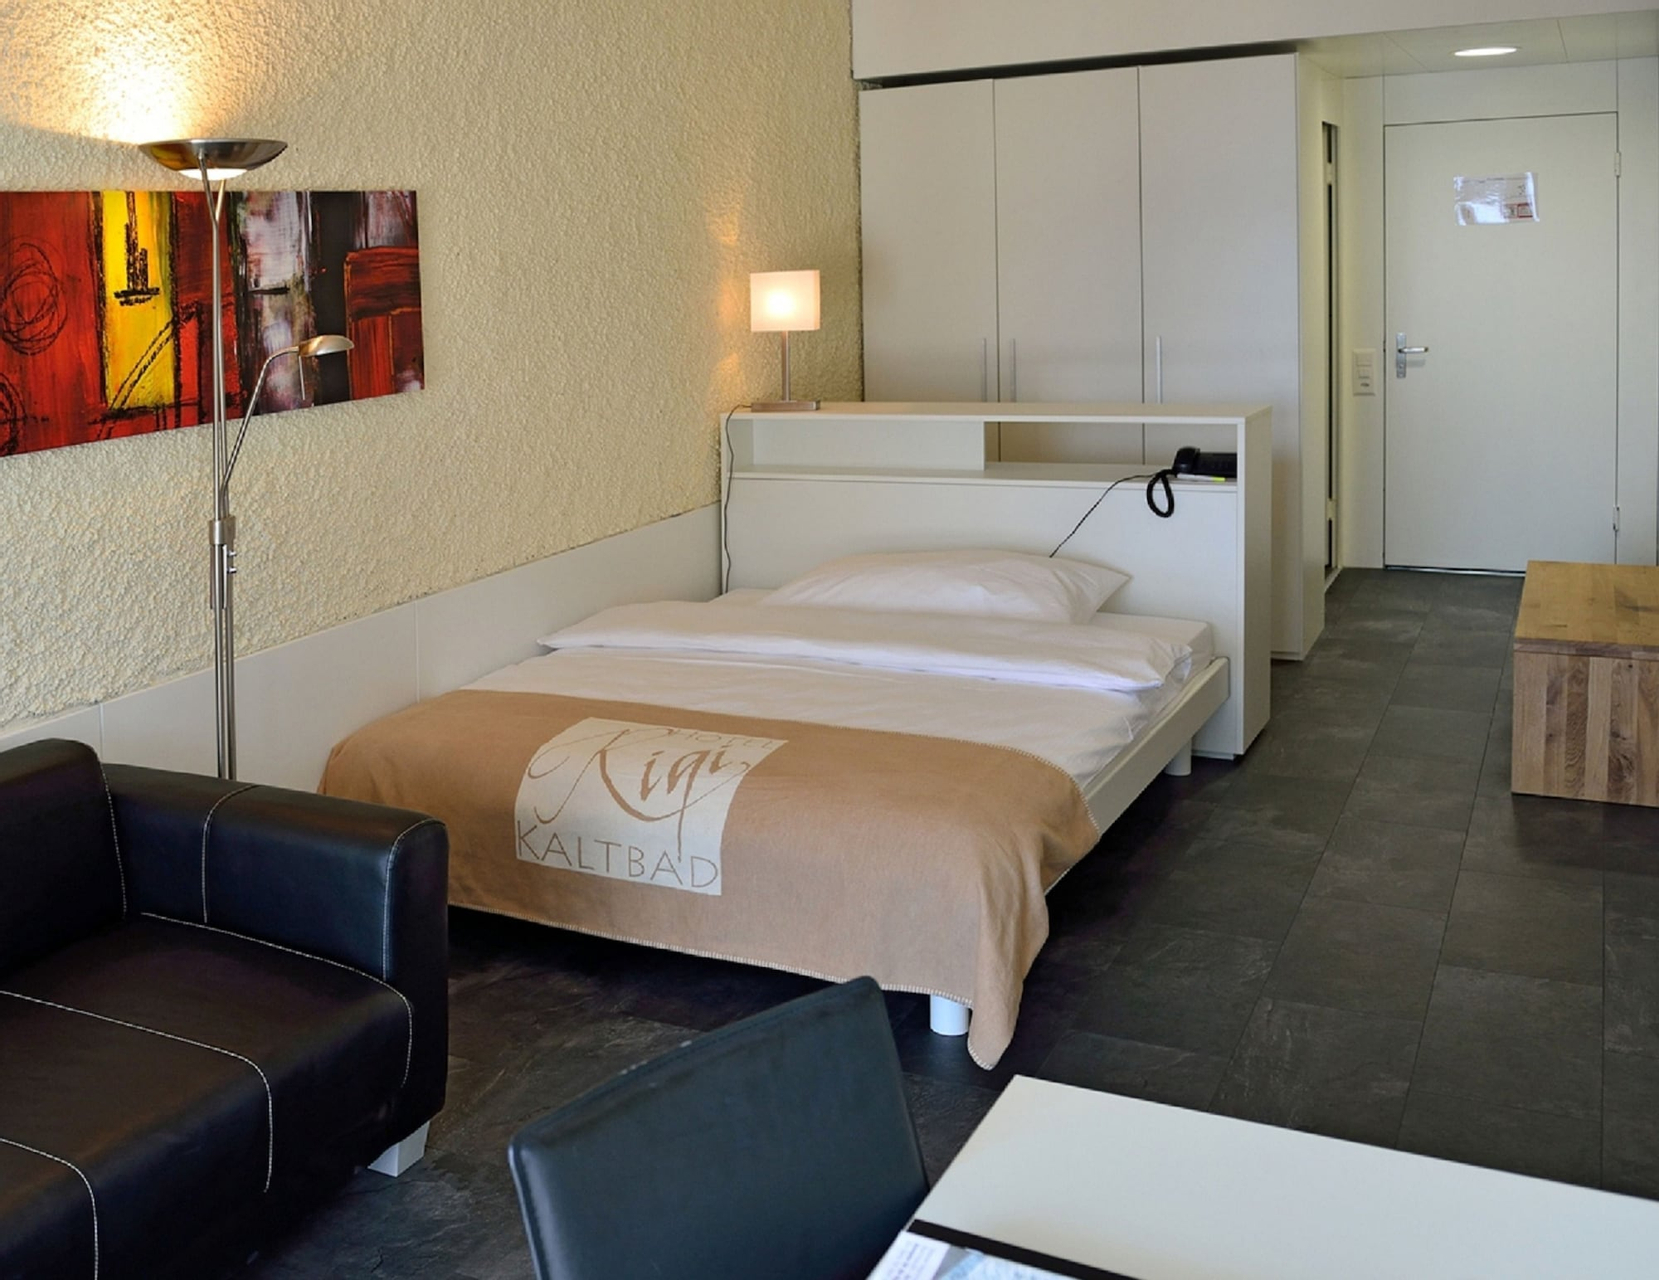 Bedroom 3, Rigi Kaltbad Swiss Quality Hotel, Luzern